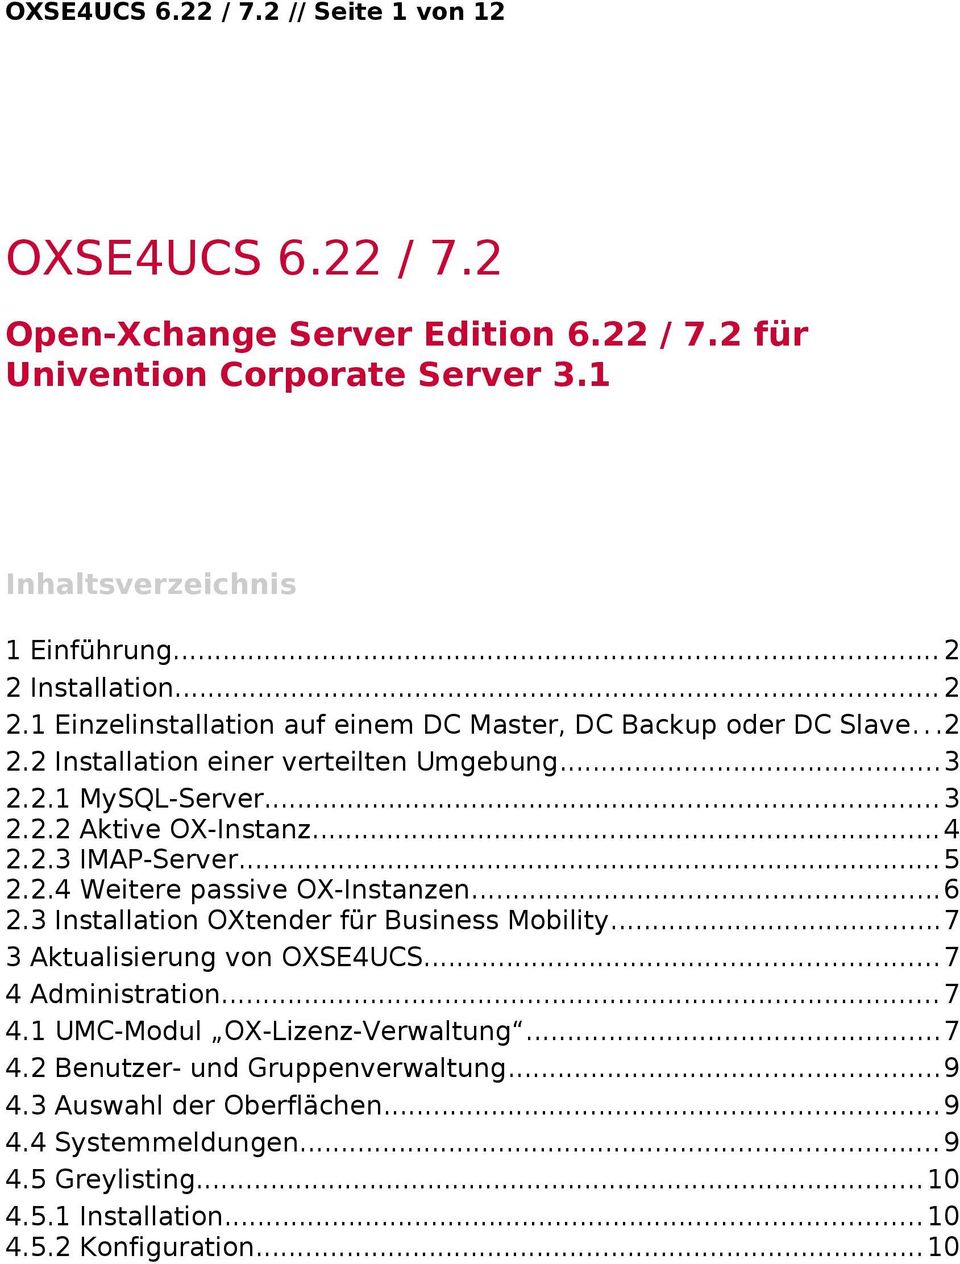 ..5 2.2.4 Weitere passive OX-Instanzen...6 2.3 Installation OXtender für Business Mobility...7 3 Aktualisierung von OXSE4UCS...7 4 Administration...7 4.1 UMC-Modul OX-Lizenz-Verwaltung.